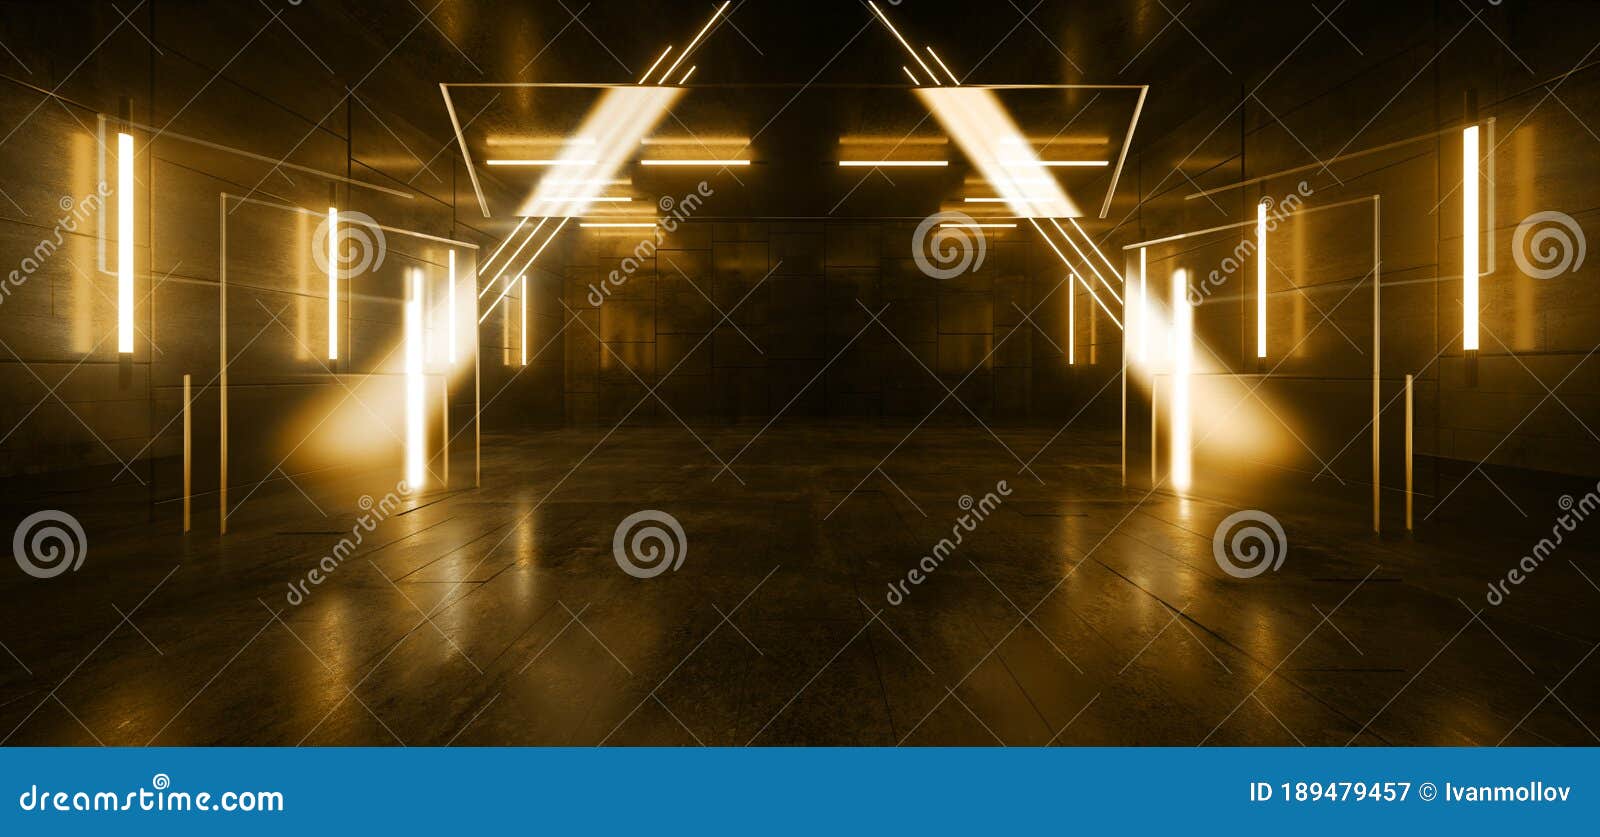 Neon Laser Triangle Stage Construction Fluorescent Orange Dance Garage ...